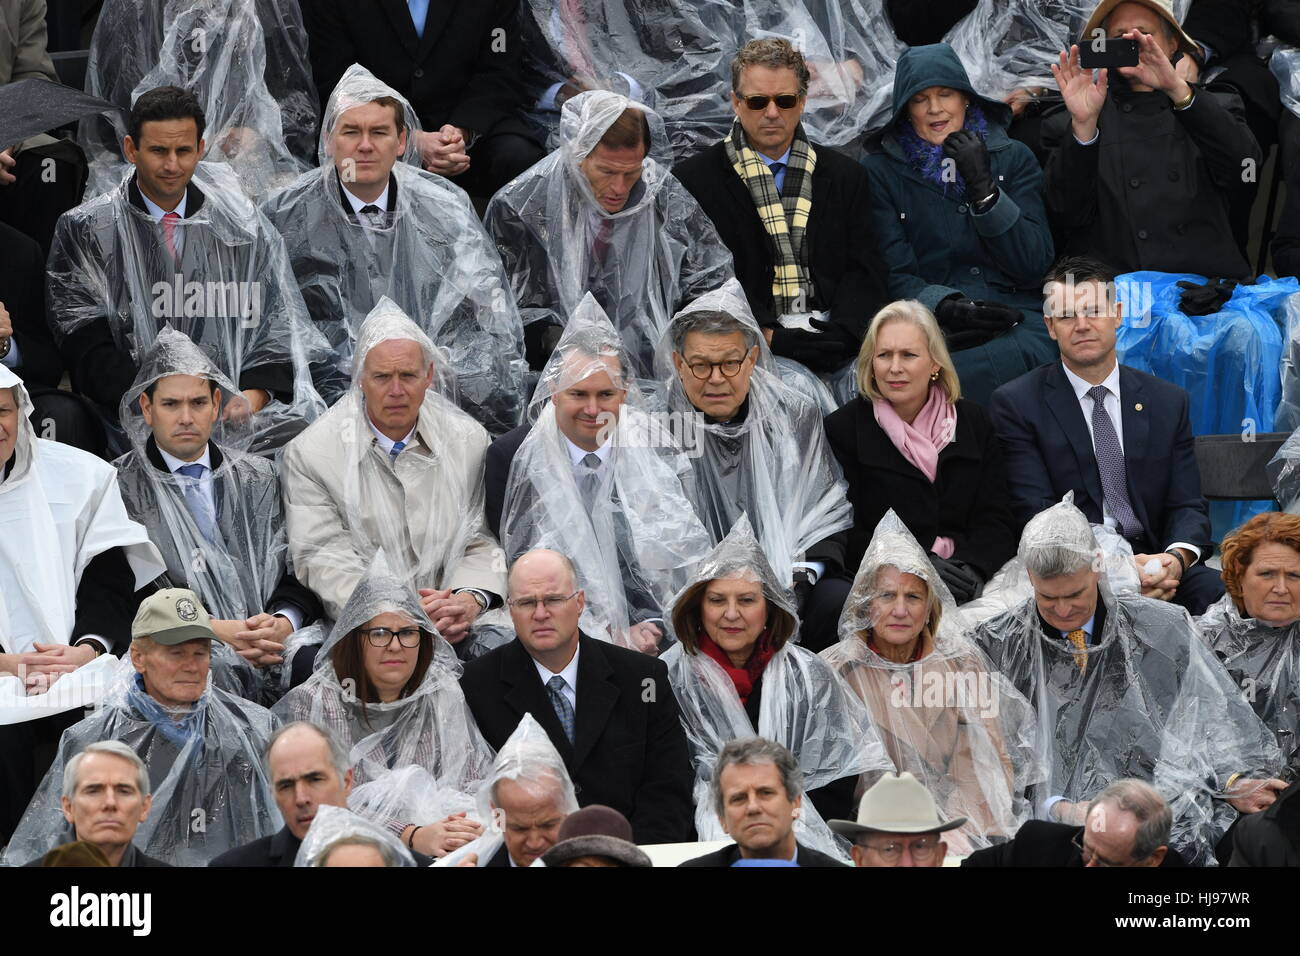 US-Senatoren tragen Regenponchos während ein kurzer Regenschauer bei der Präsident Eröffnungs-Zeremonie auf dem Capitol Hill 20. Januar 2017 in Washington, DC. Donald Trump wurde der 45. Präsident der Vereinigten Staaten in der Zeremonie. Stockfoto